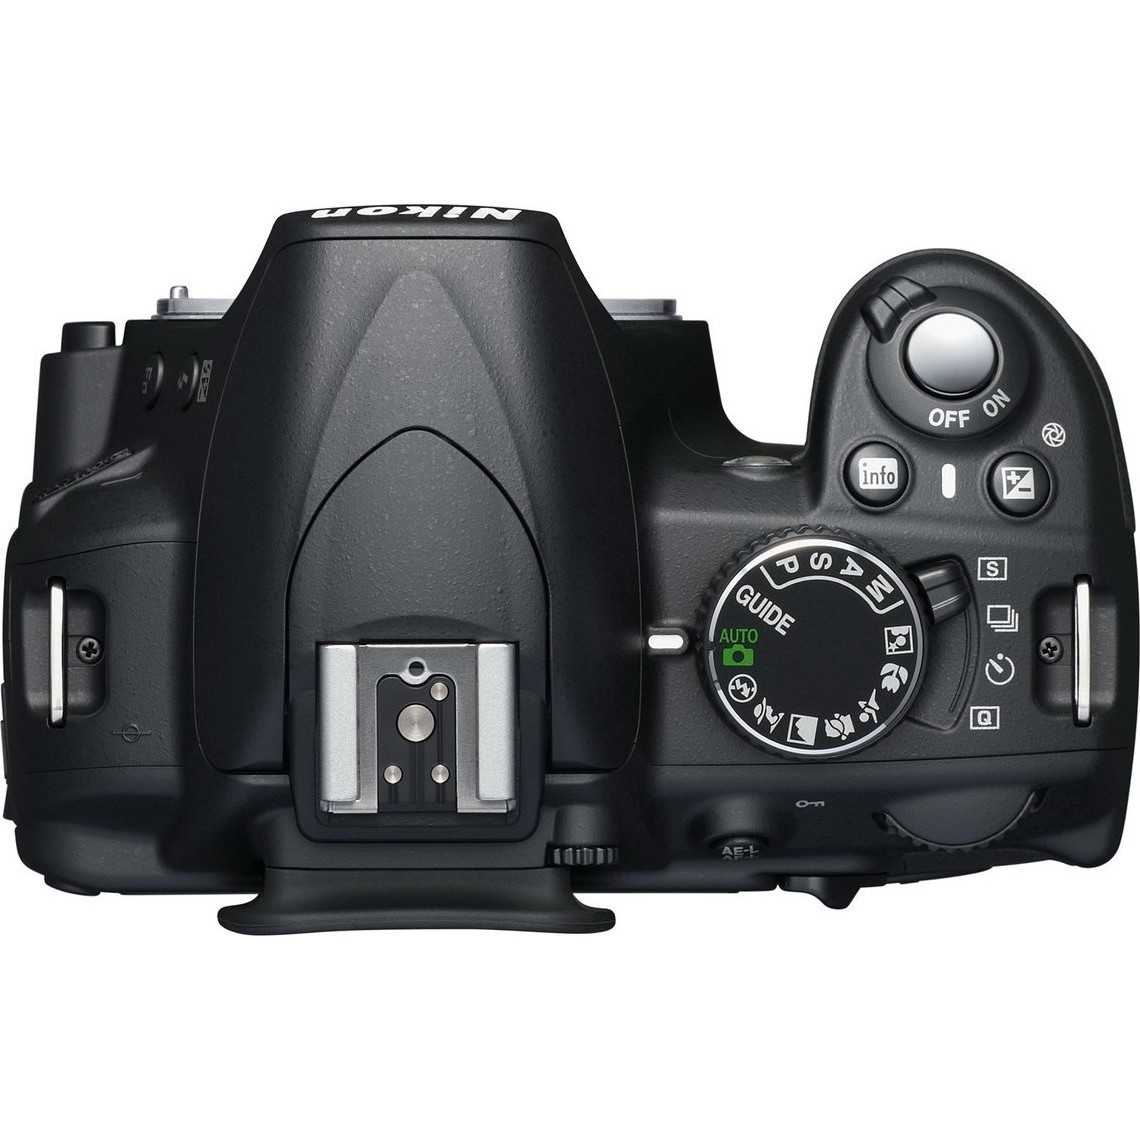 Никон д3100 подробная инструкция настройки фотоаппарата